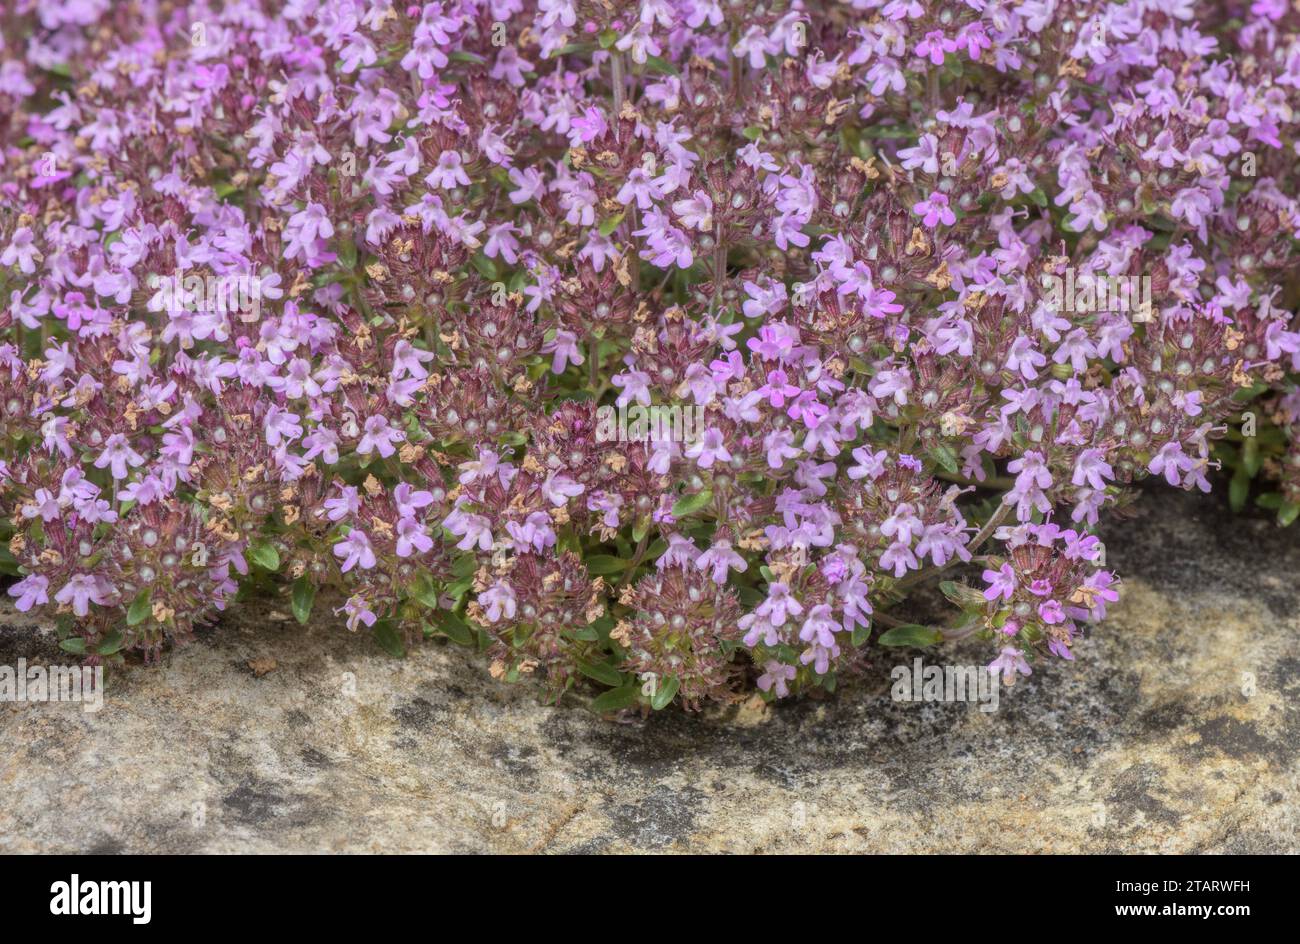 Breckland Thyme, Thymus serpyllum, in flower. Stock Photo